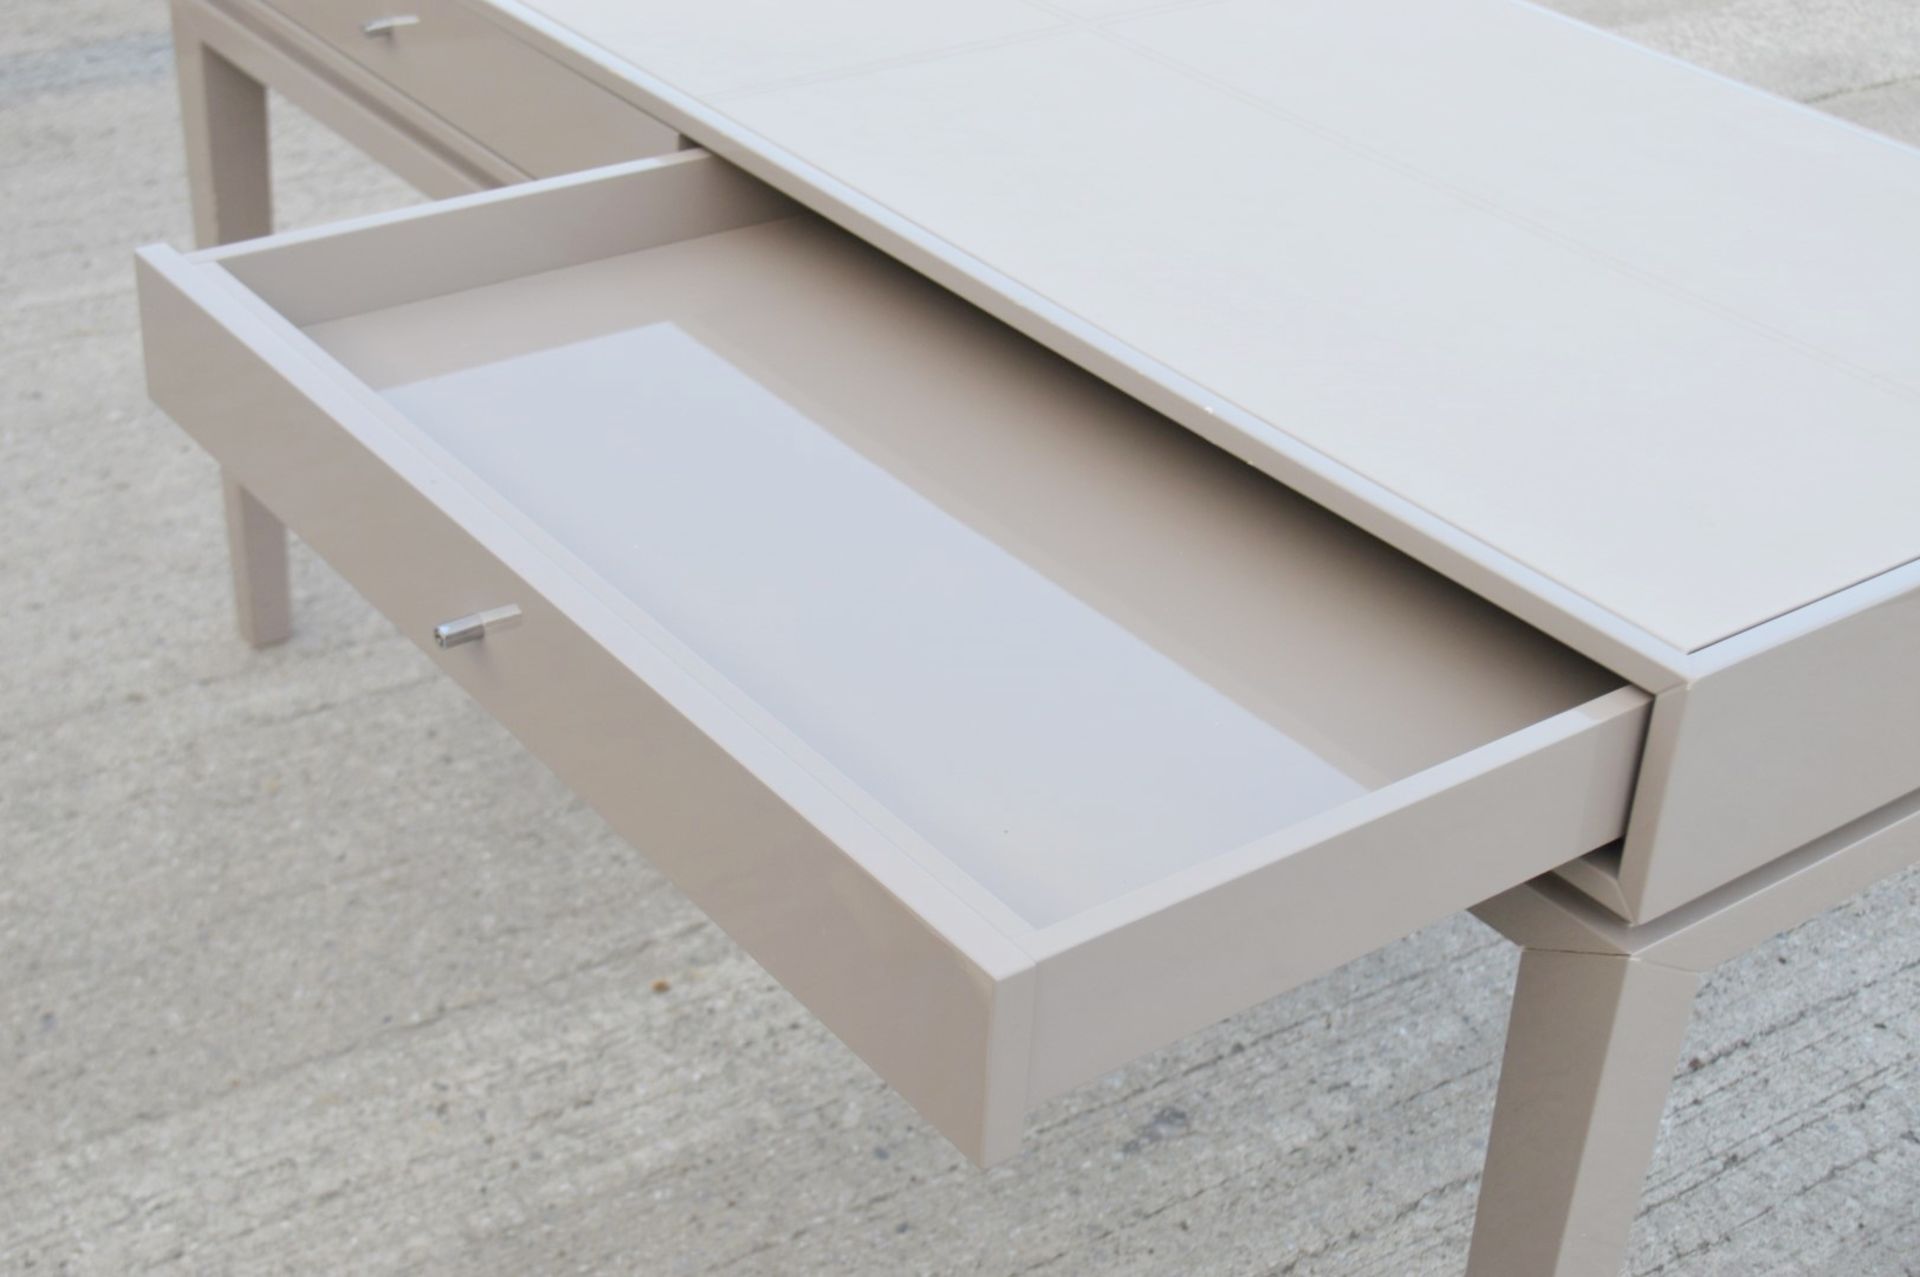 1 x FRATO 'Buzios' Designer Desk - Made In Italy - 160 x D65 x H78cm - Original Price £2,759 - Image 13 of 13